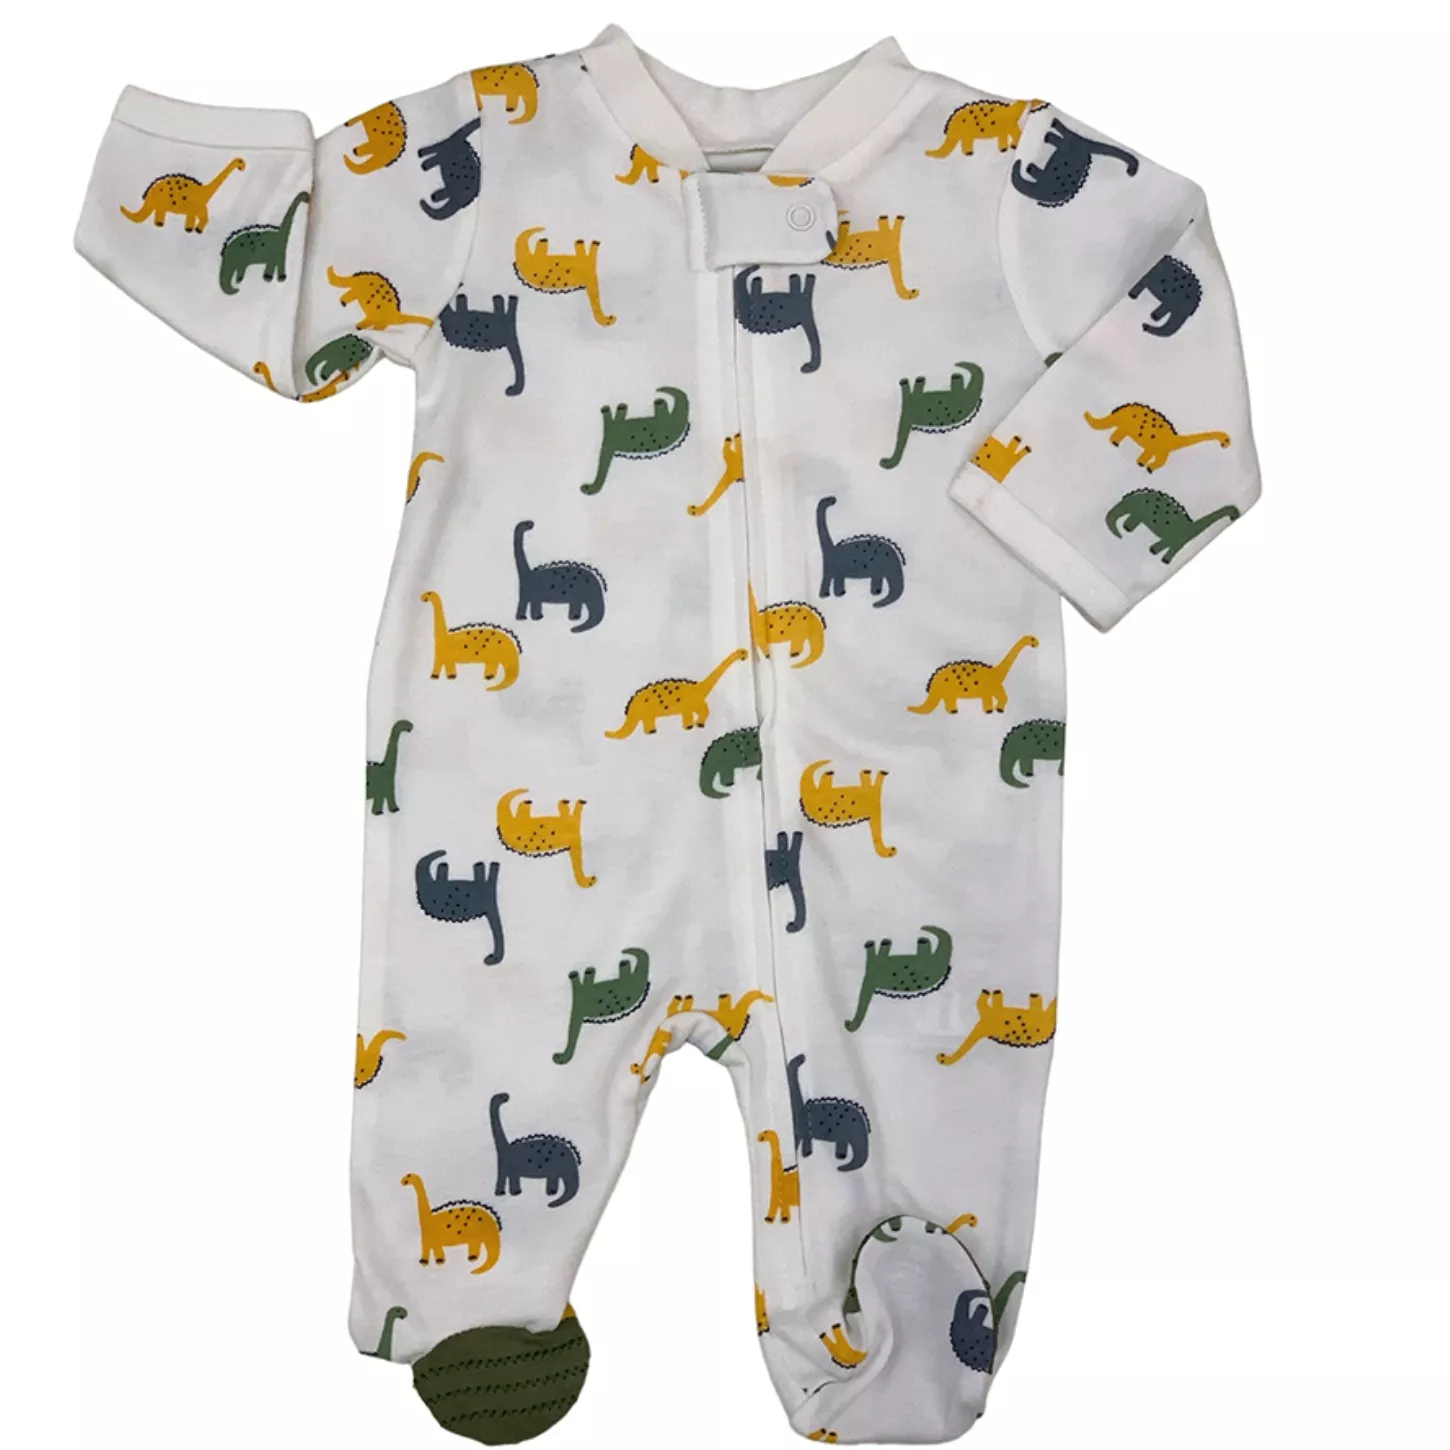 Pijama para recién nacido